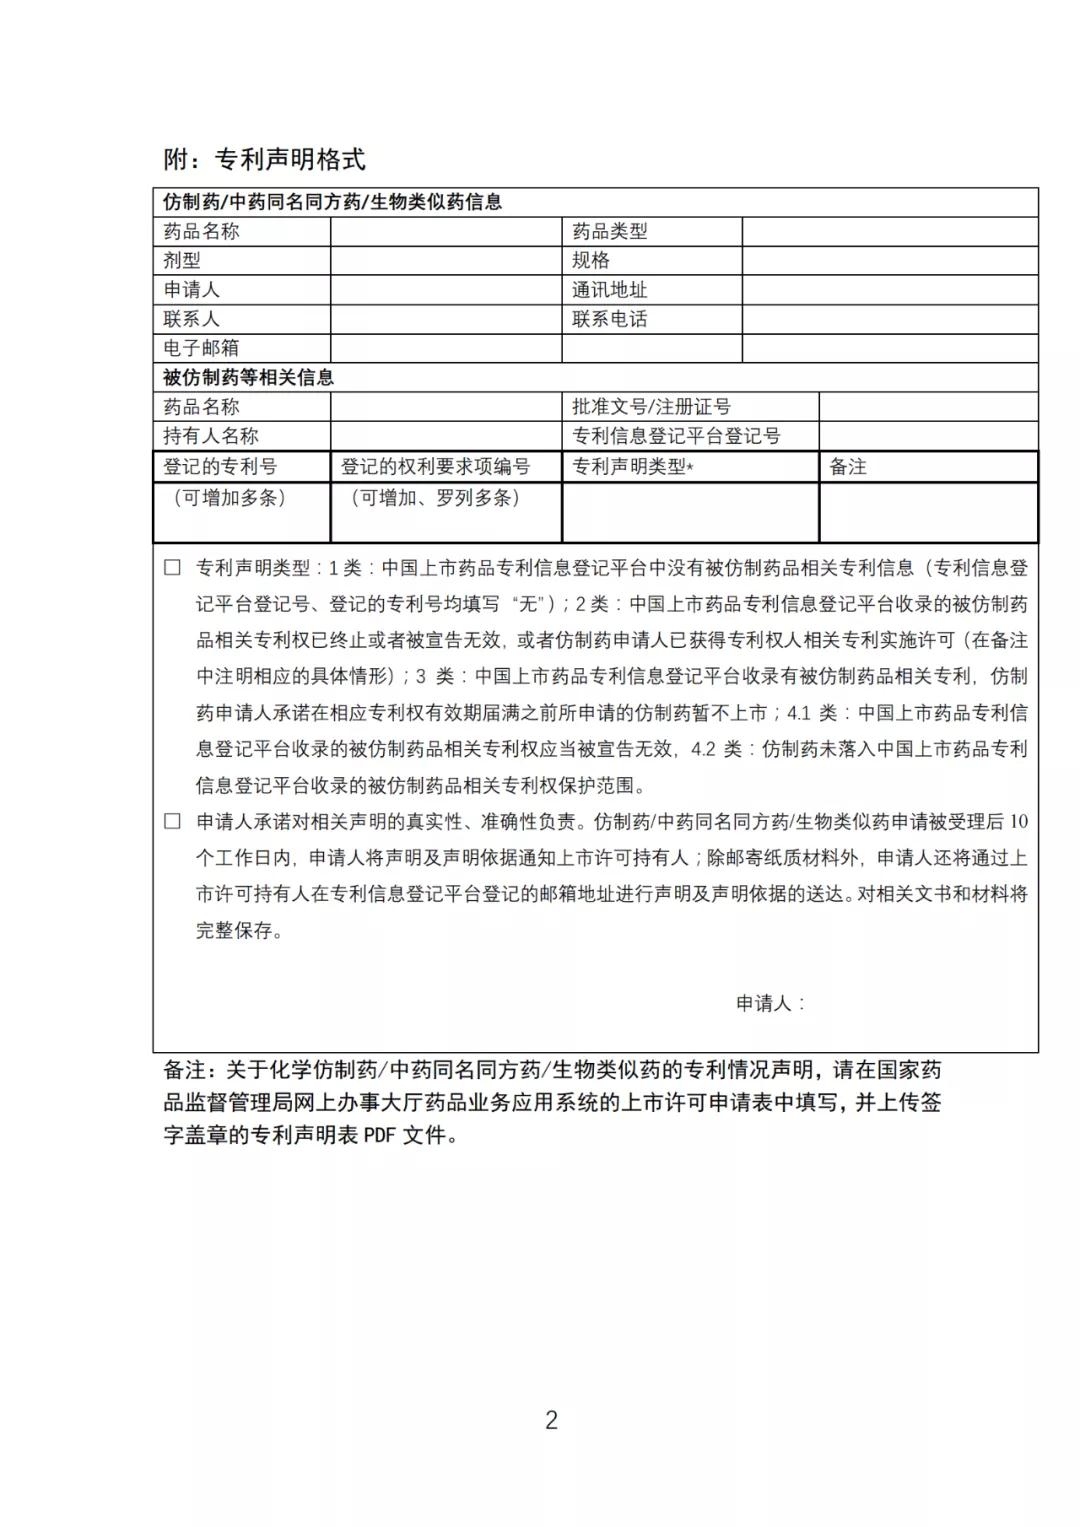 《中国上市药品专利信息登记平台》正式发布！